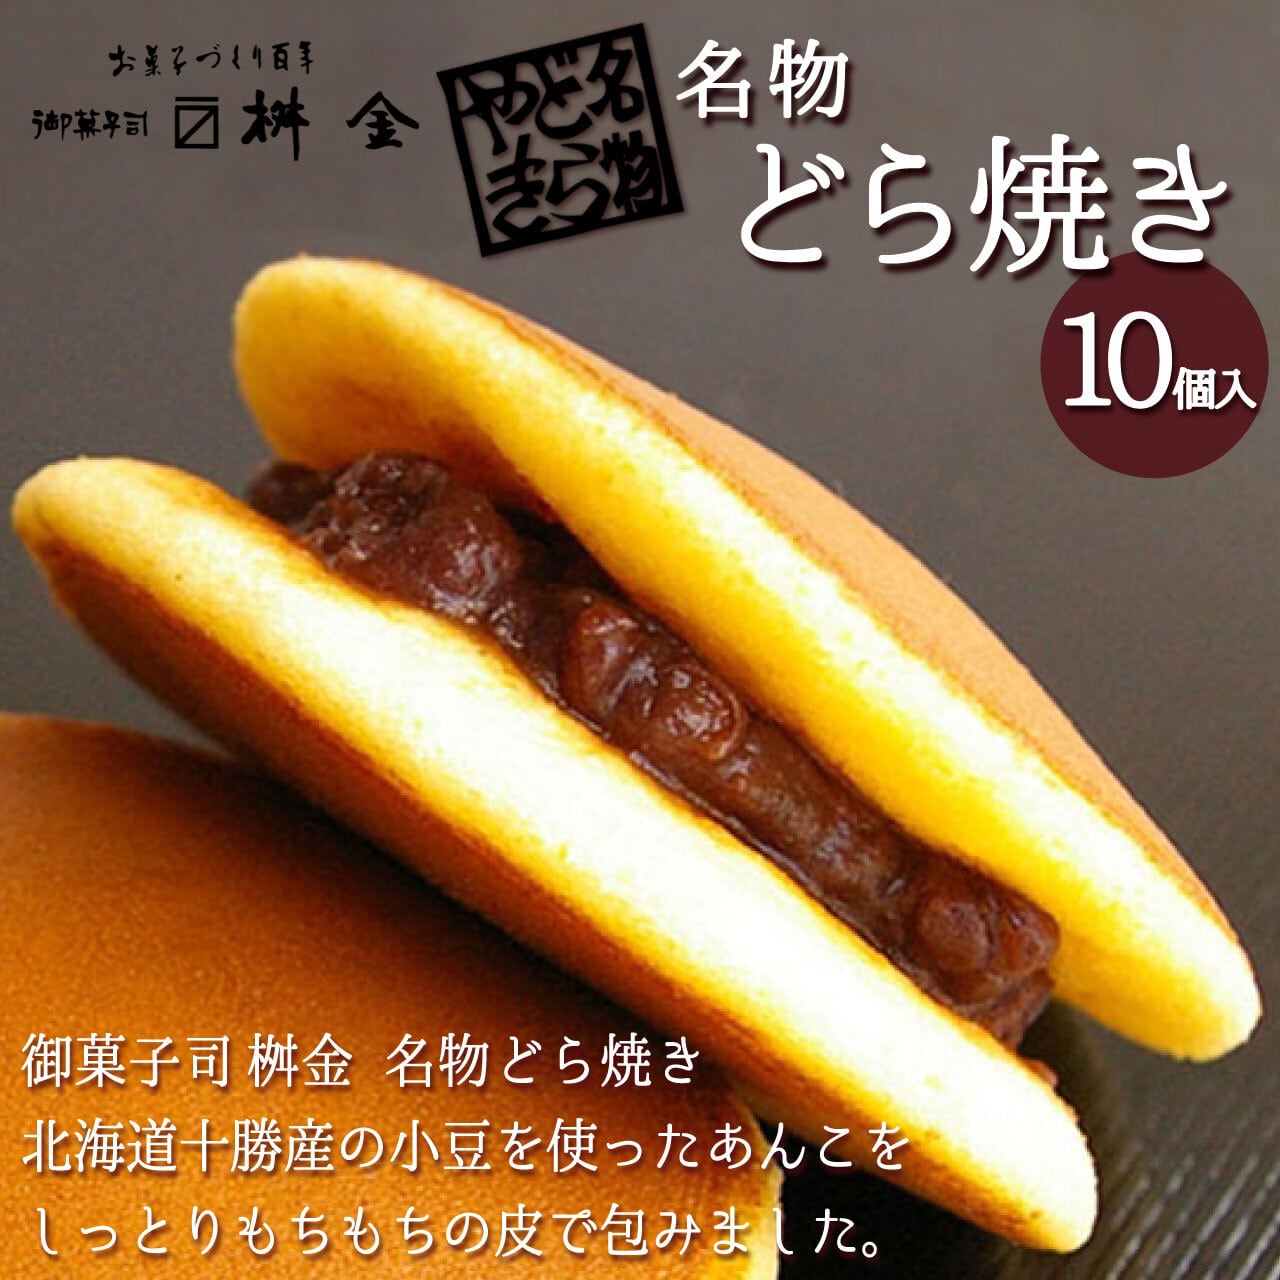 4種の 和菓子 セット 10個入り 栗  マロン どら焼き 最中 桃山まんじゅう